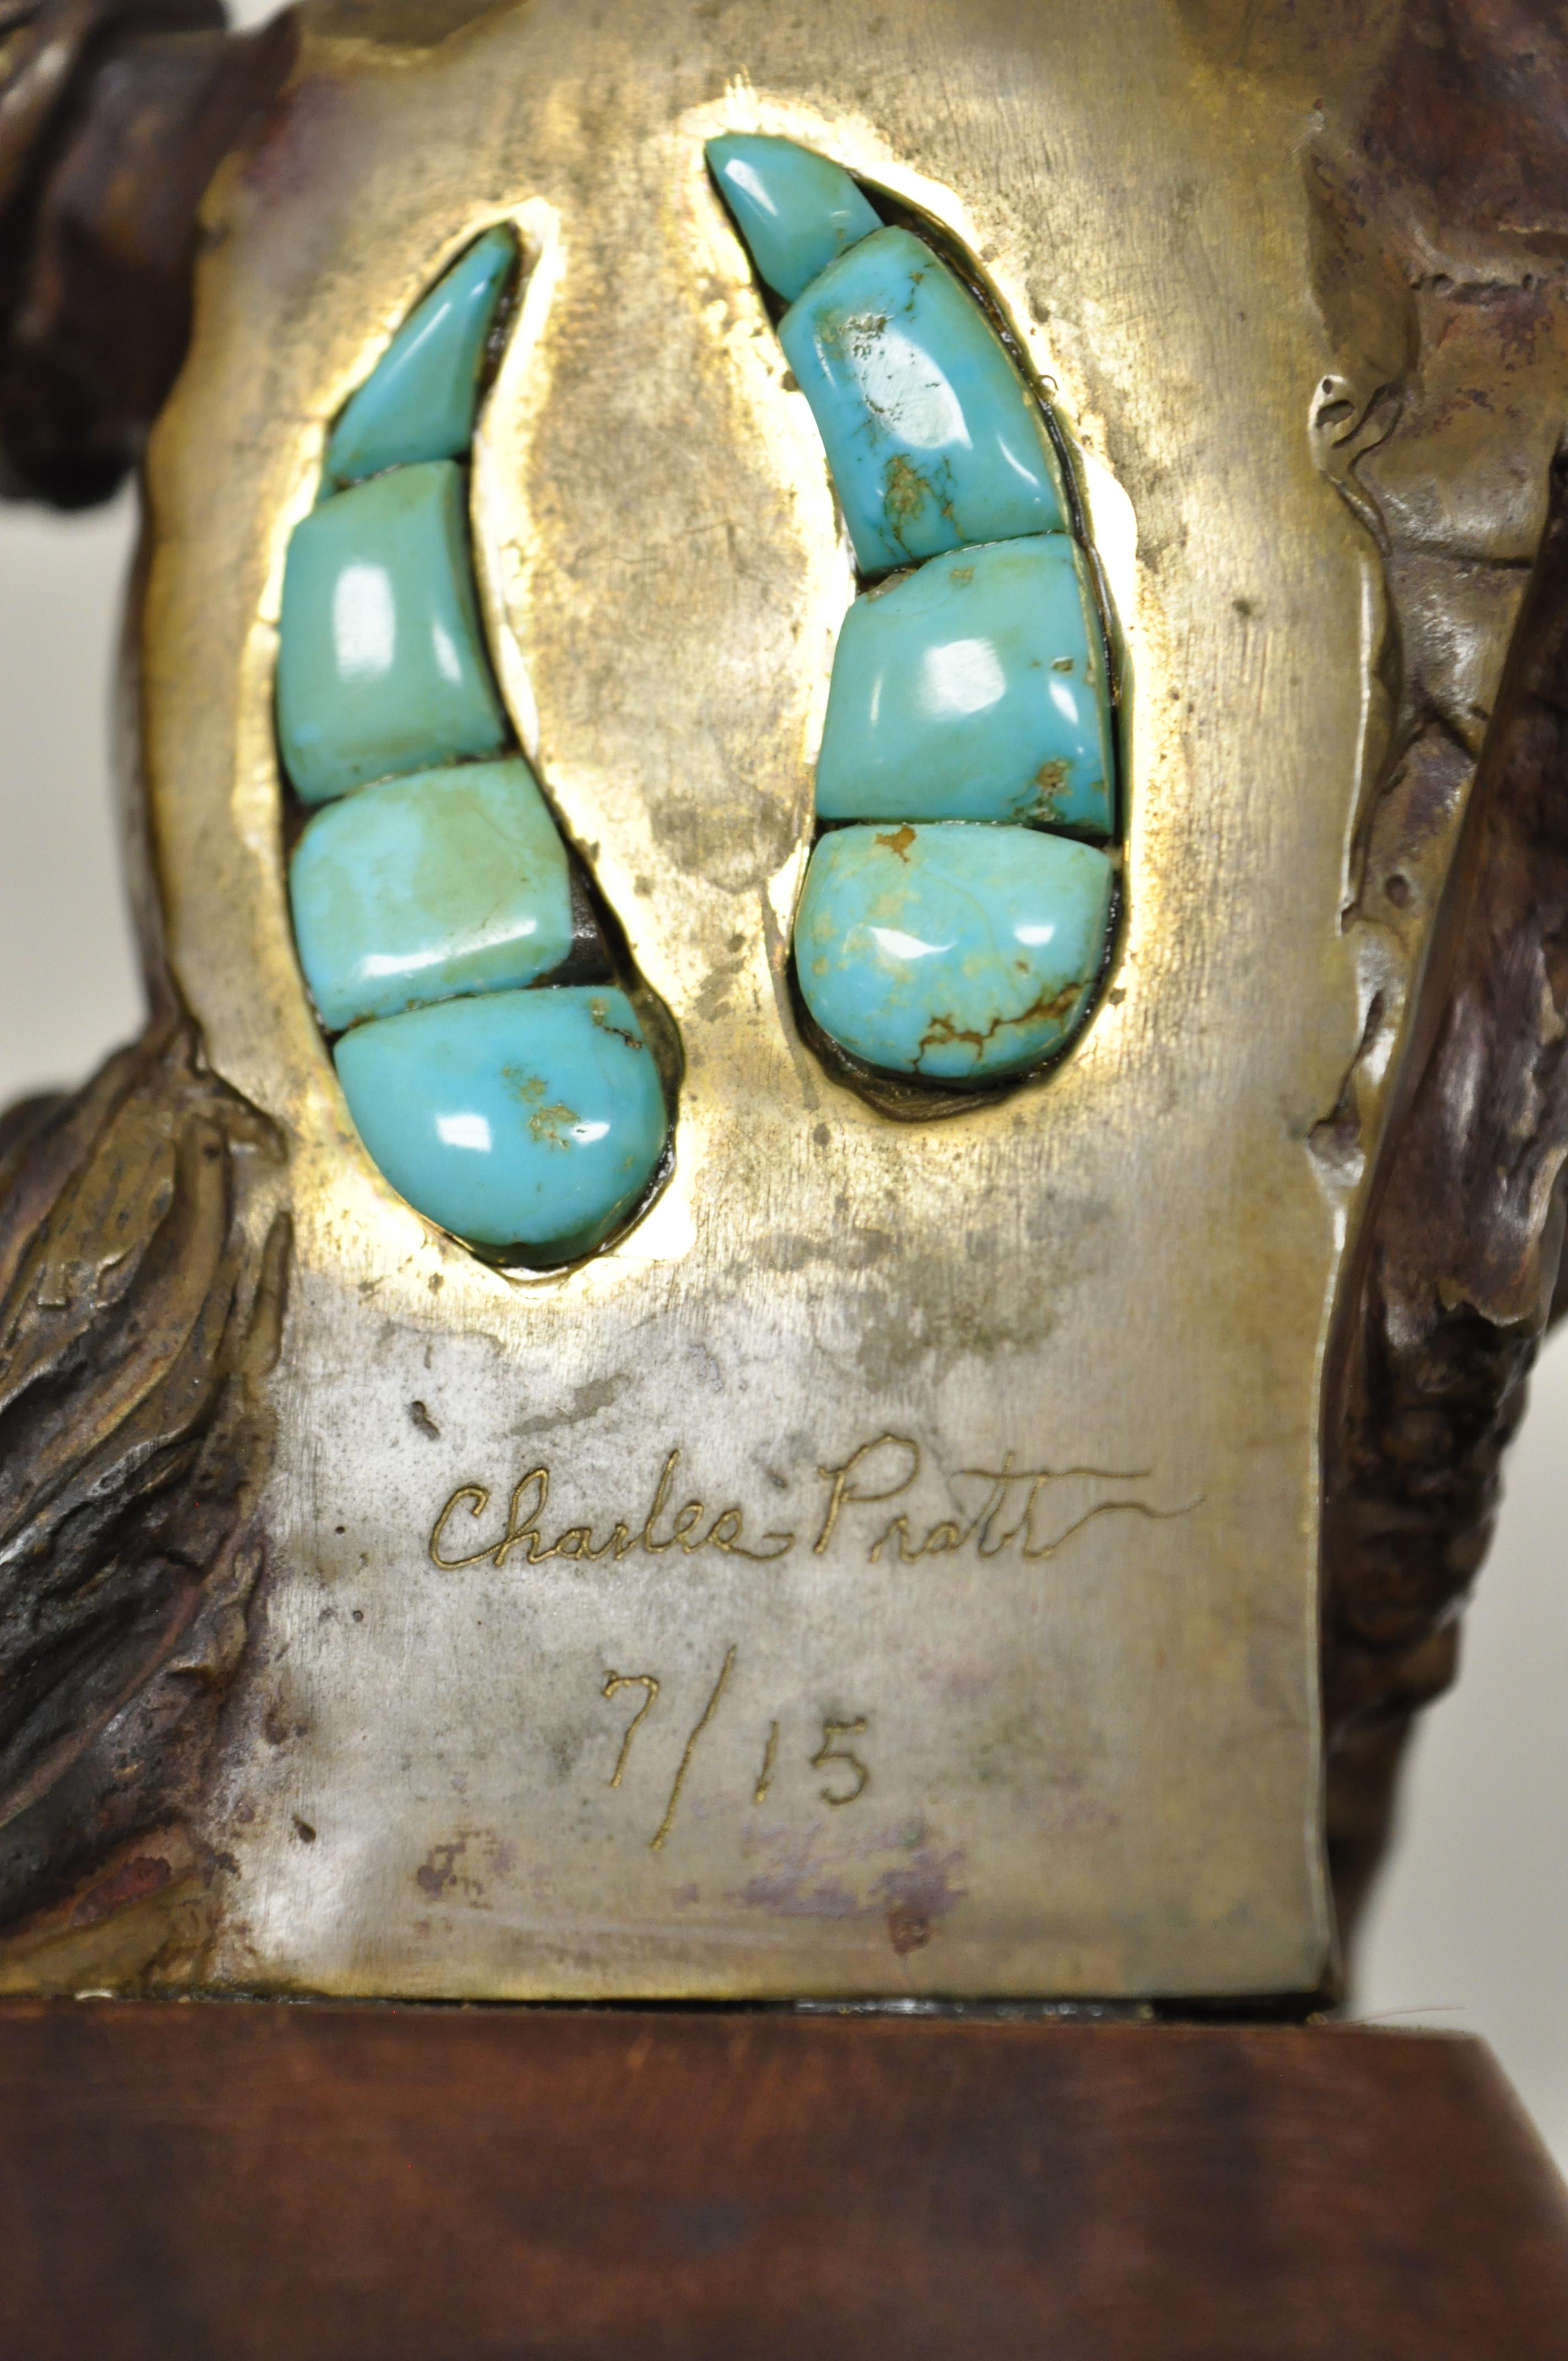 Charles Pratt Cheyenne Arapaho Bronze Chef Indien Figurine Sculpture Statue en vente 1